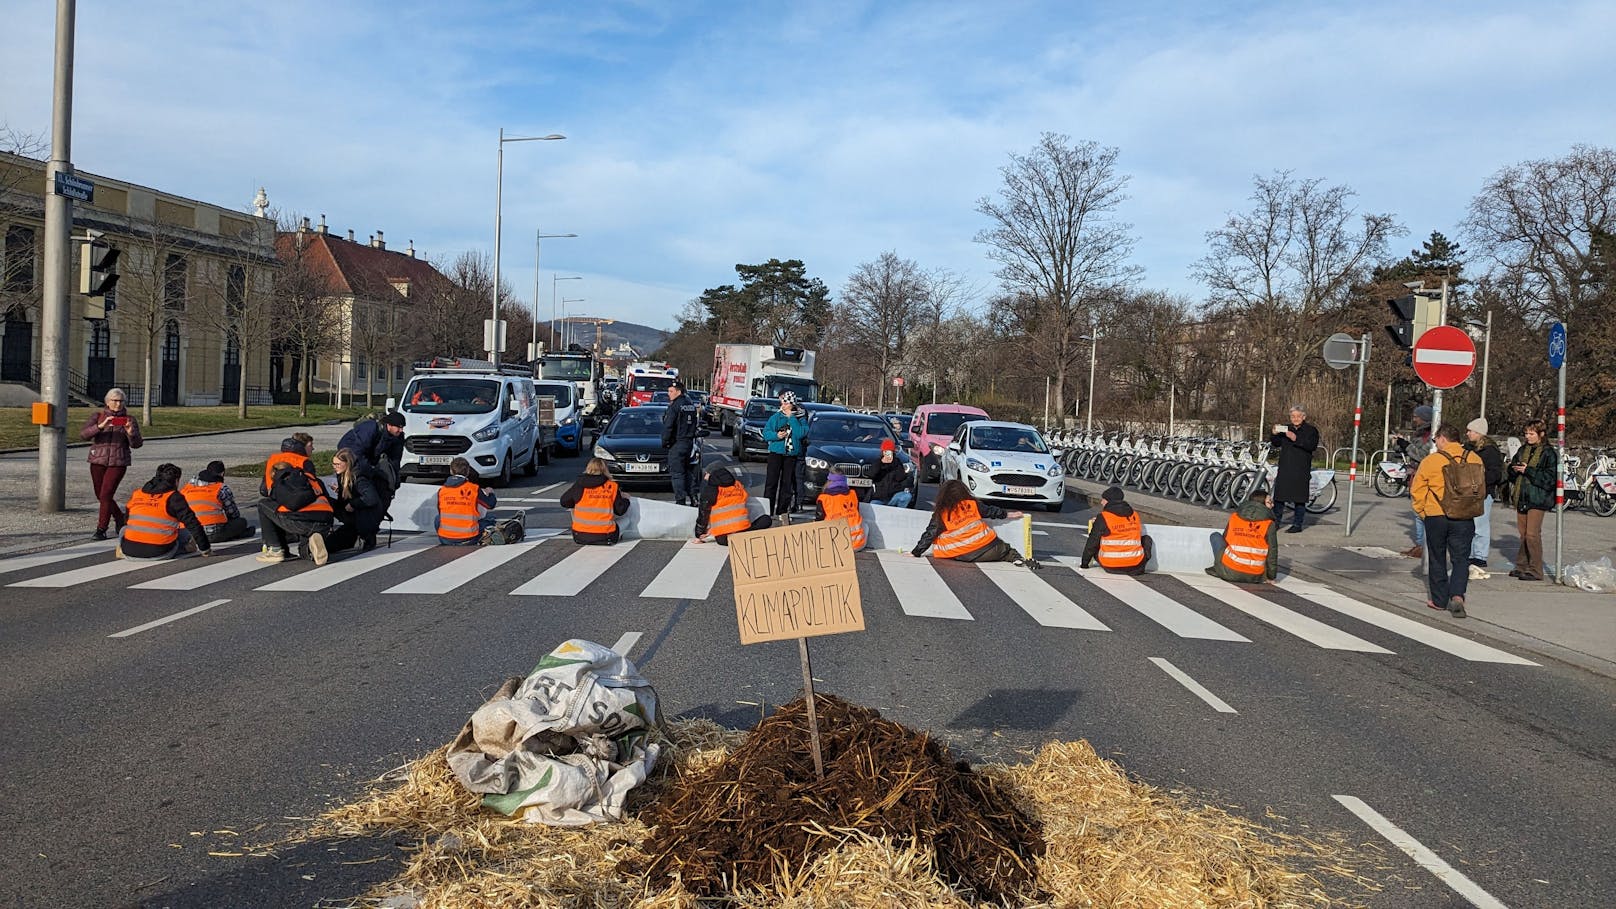 Klimakleber blockieren Straße mit "Nehammer-Misthaufen"